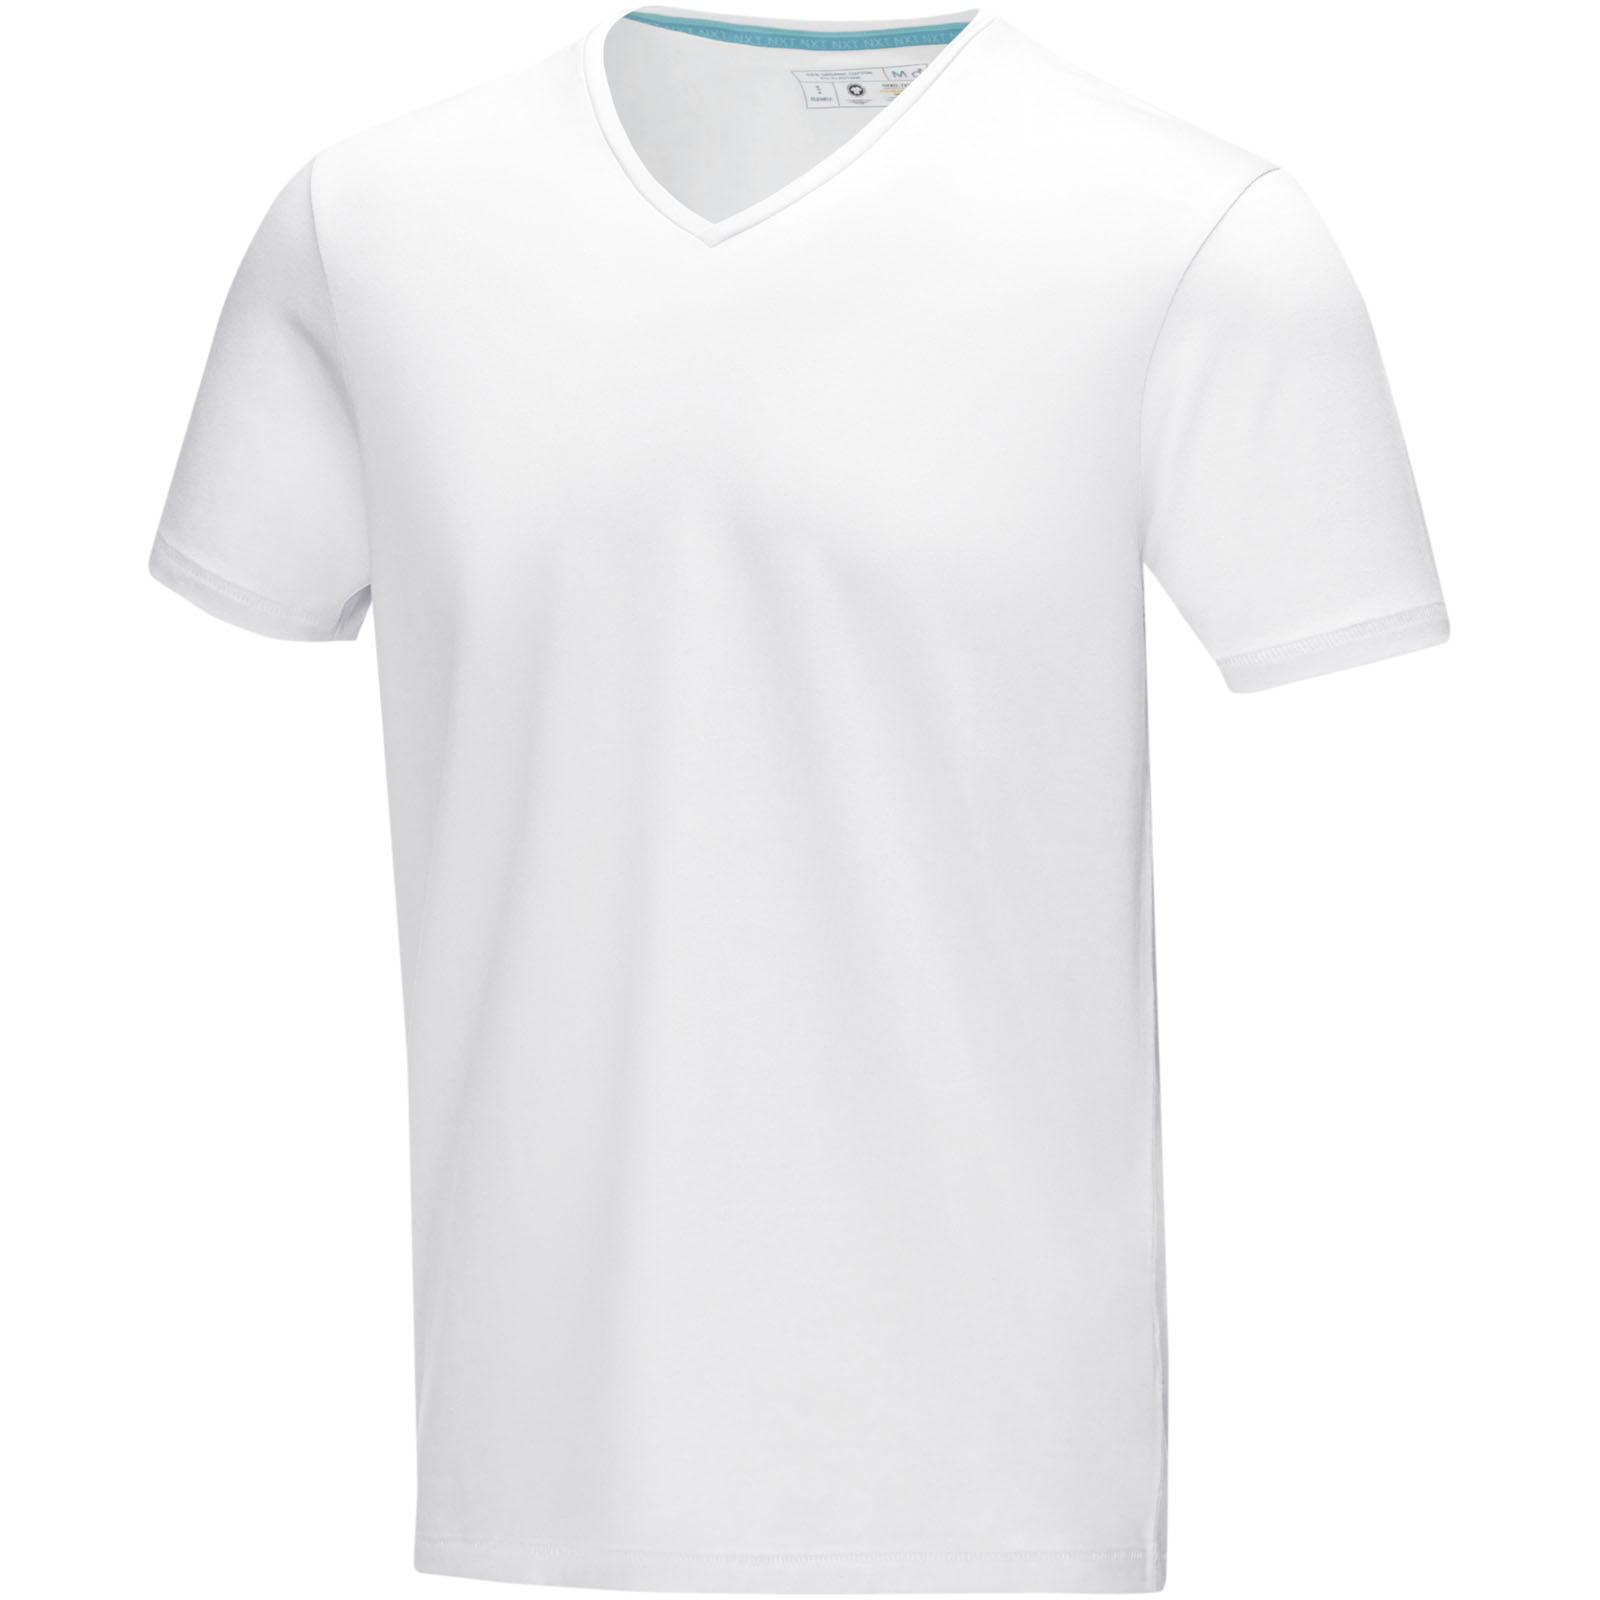 T-shirt da uomo Kawartha a maniche corte con scollo a V in cotone organico GOTS - Verceia